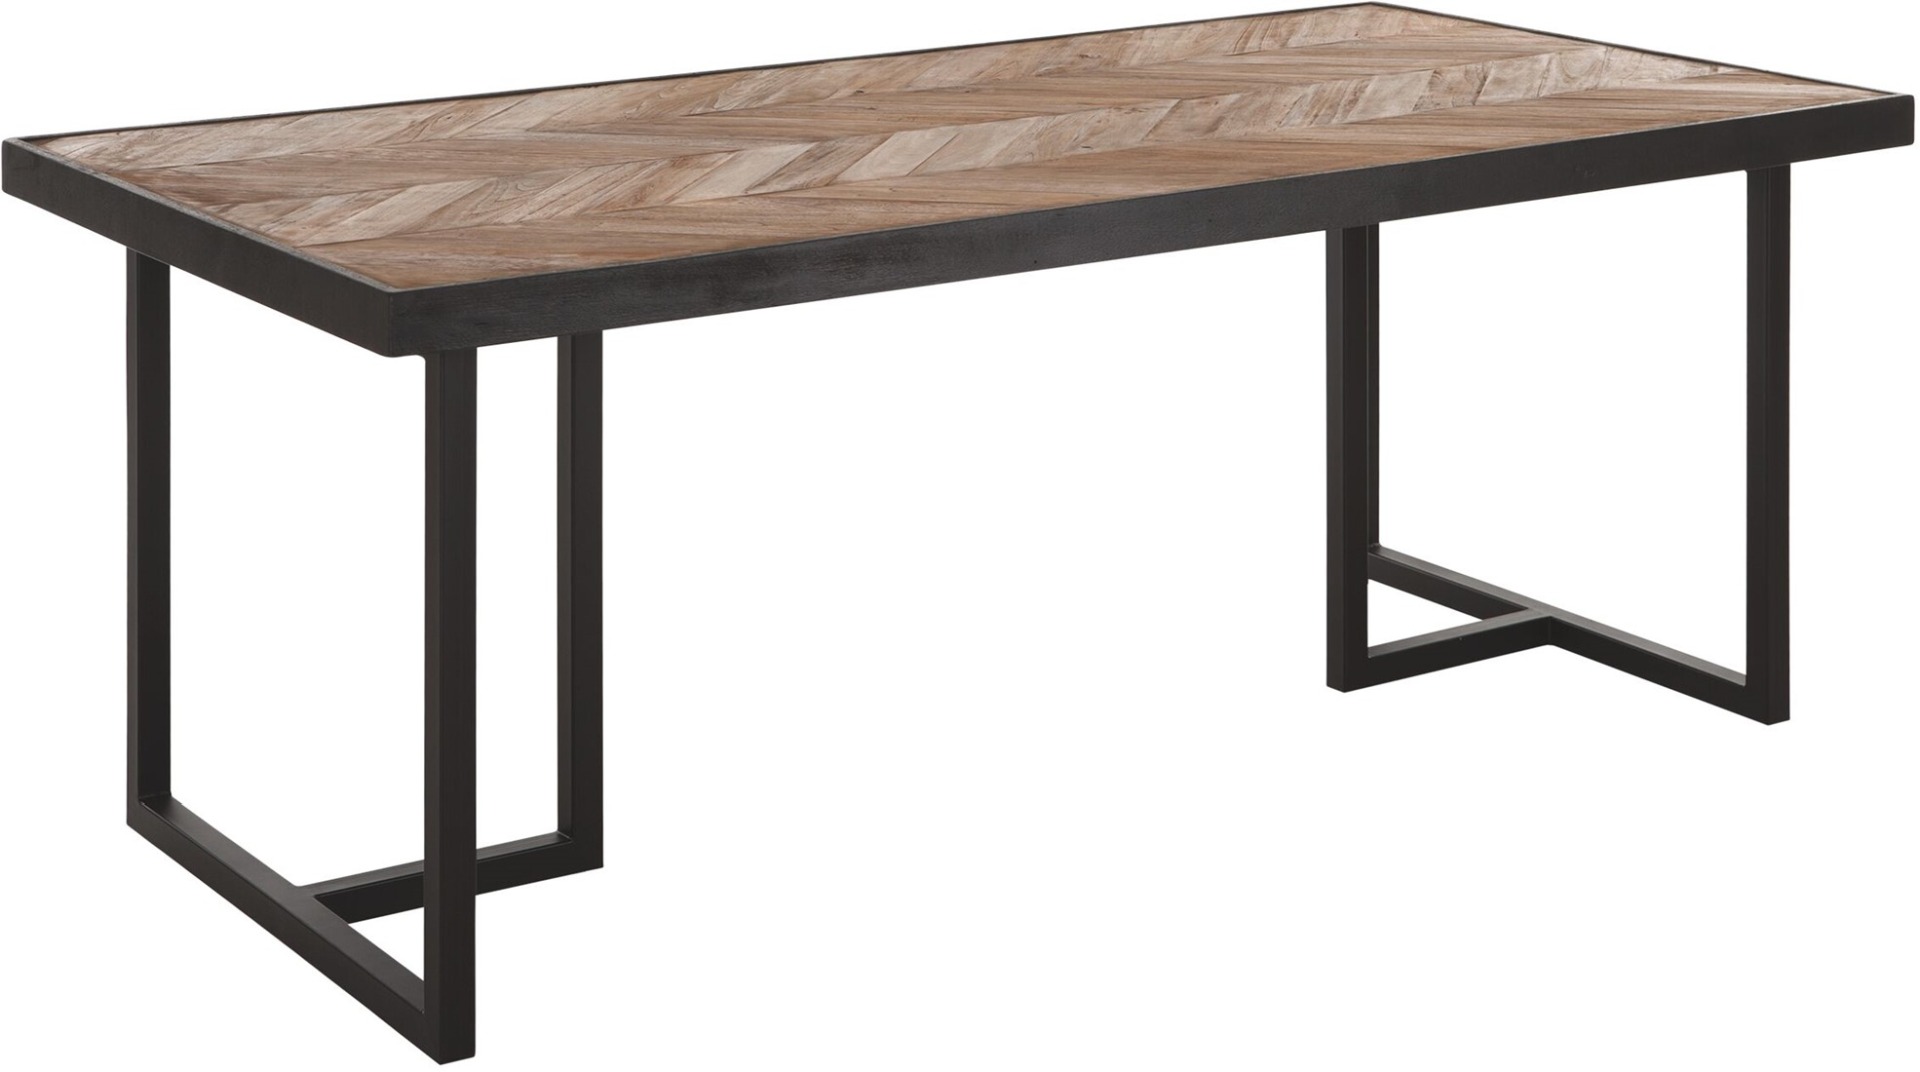 Der Esstisch Criss Cross überzeugt mit seinem massivem aber auch modernem Design. Gefertigt wurde er aus verschiedenen Holzarten, welche einen natürlichen und schwarzen Farbton besitzen. Der Tisch hat eine Länge von 200 cm.